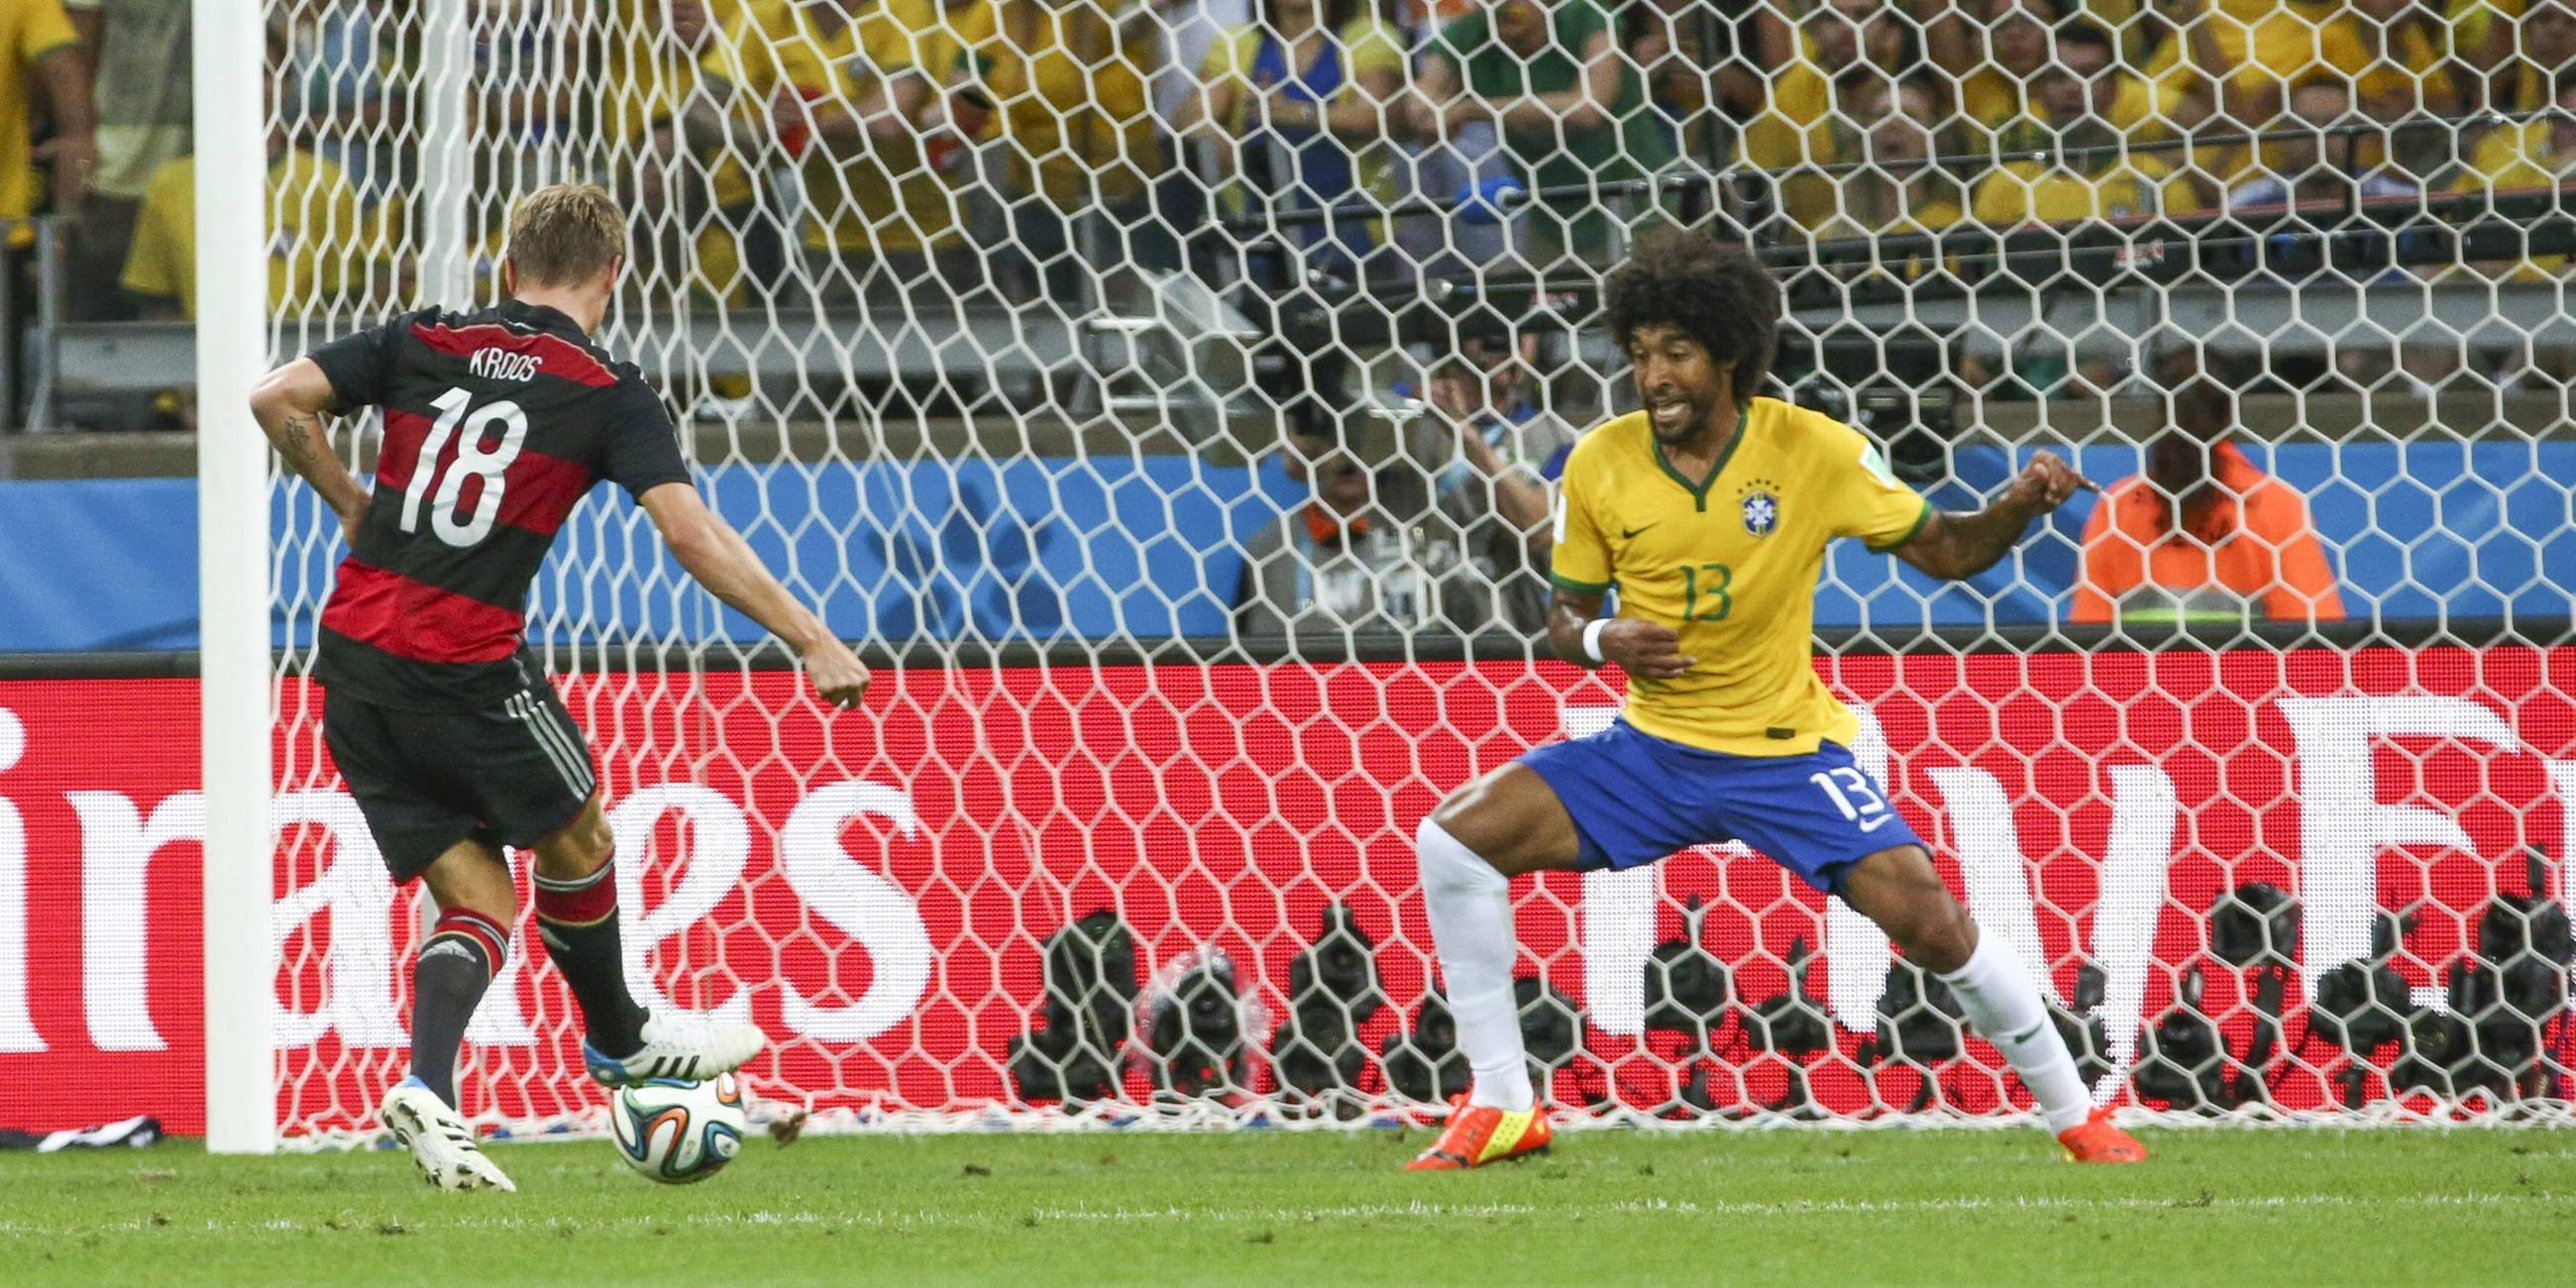 Bei der WM 2014 ist Kroos einer der Garanten für den Titel. Beim legendären 7:1 im Halbfinale gegen Brasilien erzielt er zwei Tore.